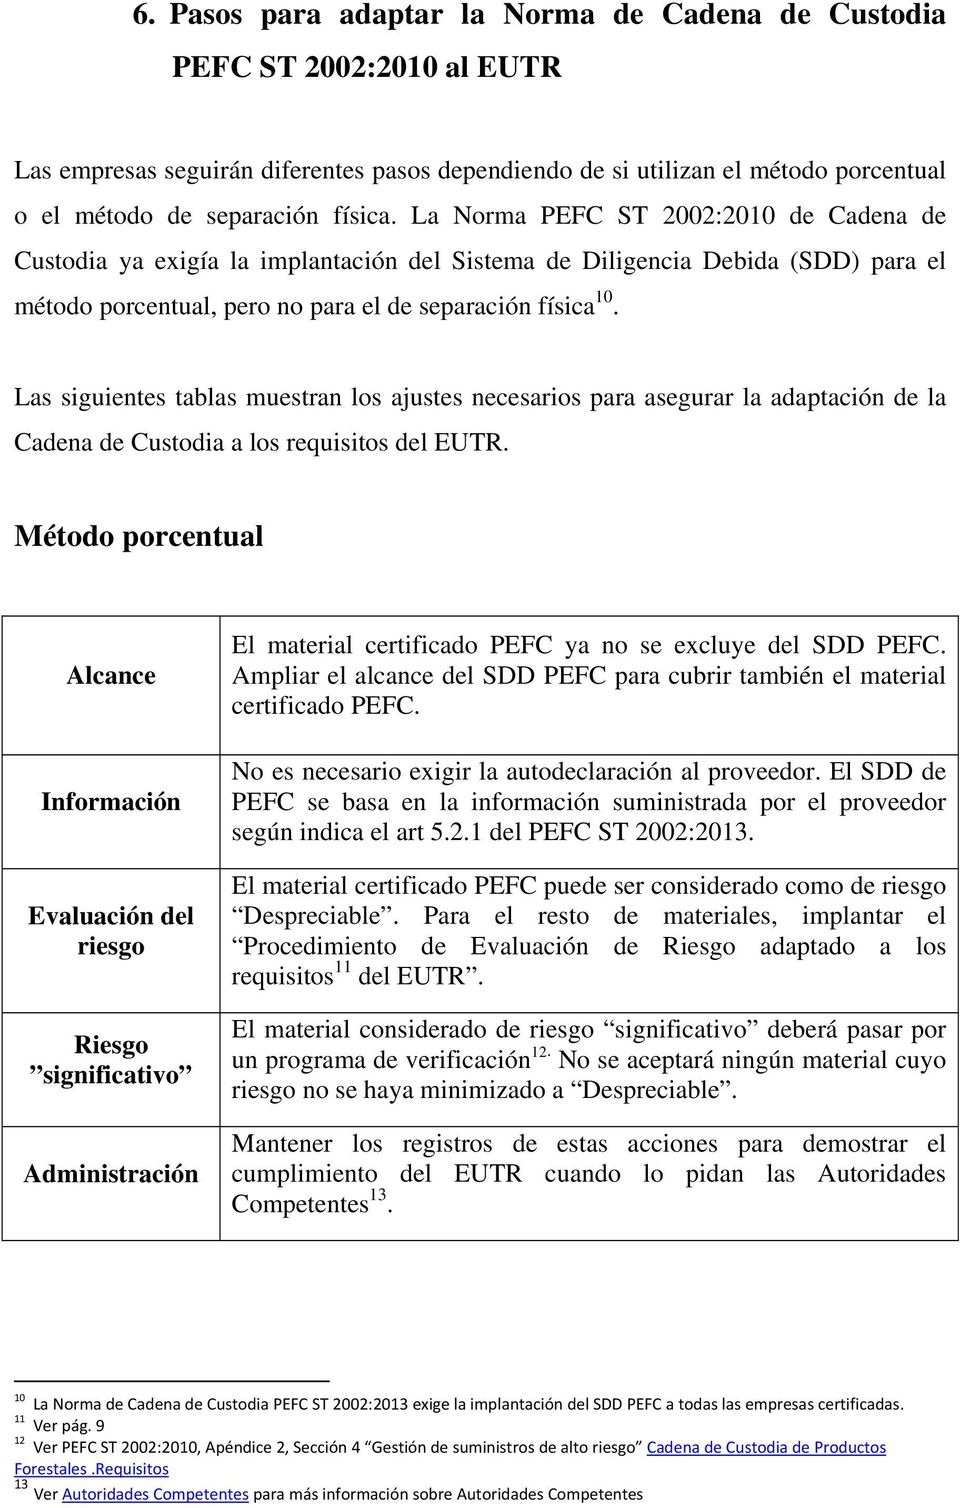 Las siguientes tablas muestran los ajustes necesarios para asegurar la adaptación de la Cadena de Custodia a los requisitos del EUTR.